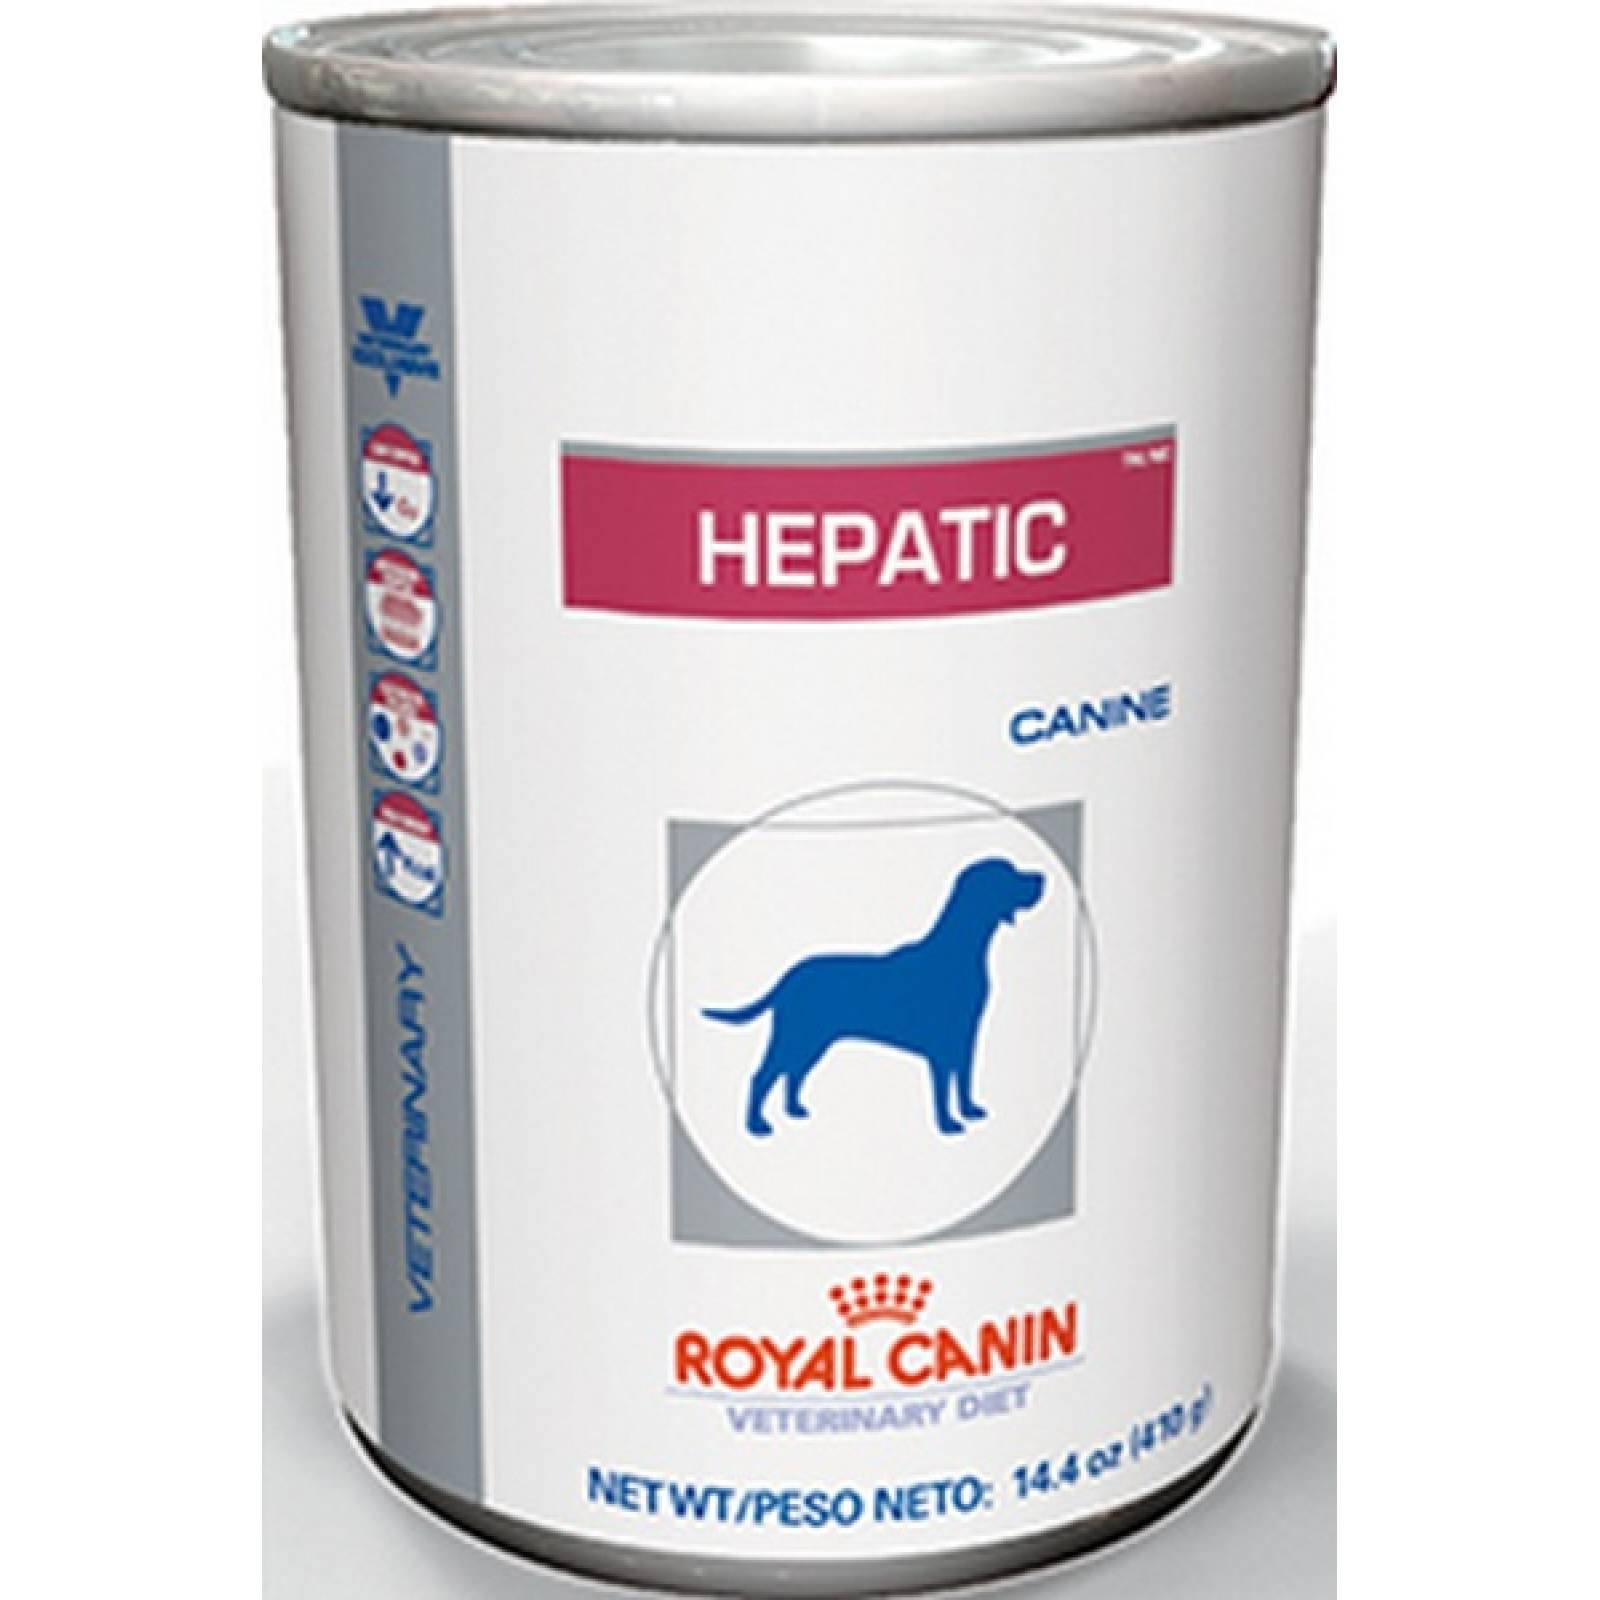 Royal Canin Dieta Veterinaria Alimento Humedo para Perro Enfermedades del Higado lata 410 g